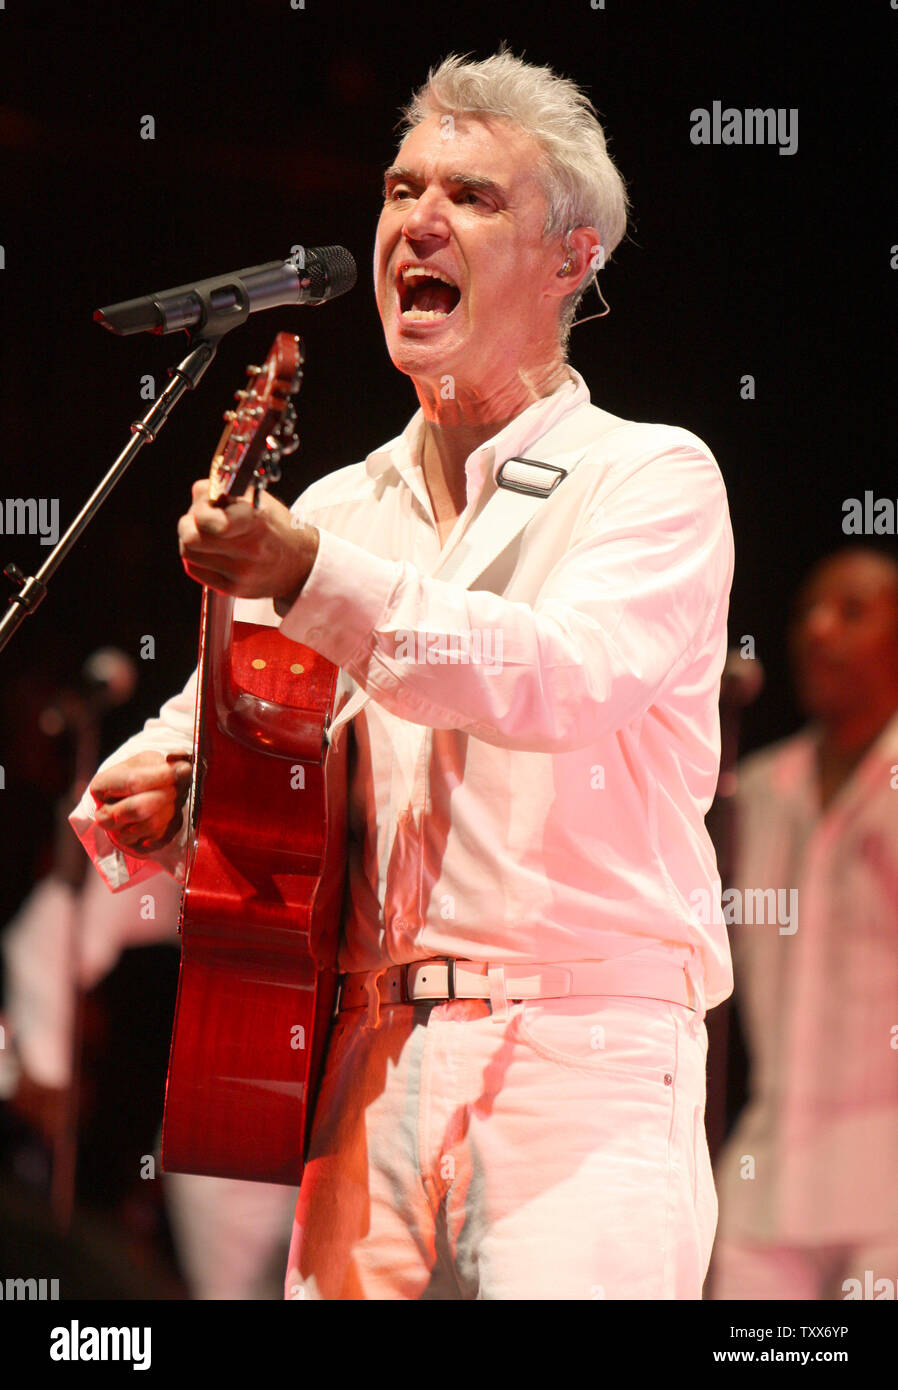 David Byrne esegue presso l'Uptown Theatre in Kansas City, Missouri il 19 ottobre 2008. L'ex cantante dei Talking Heads è touring a sostegno del suo prossimo CD 'Tutto quello che accade Accadrà oggi", che è stato co-scritto con Brian Eno. (UPI foto/Daniel Gluskoter) Foto Stock